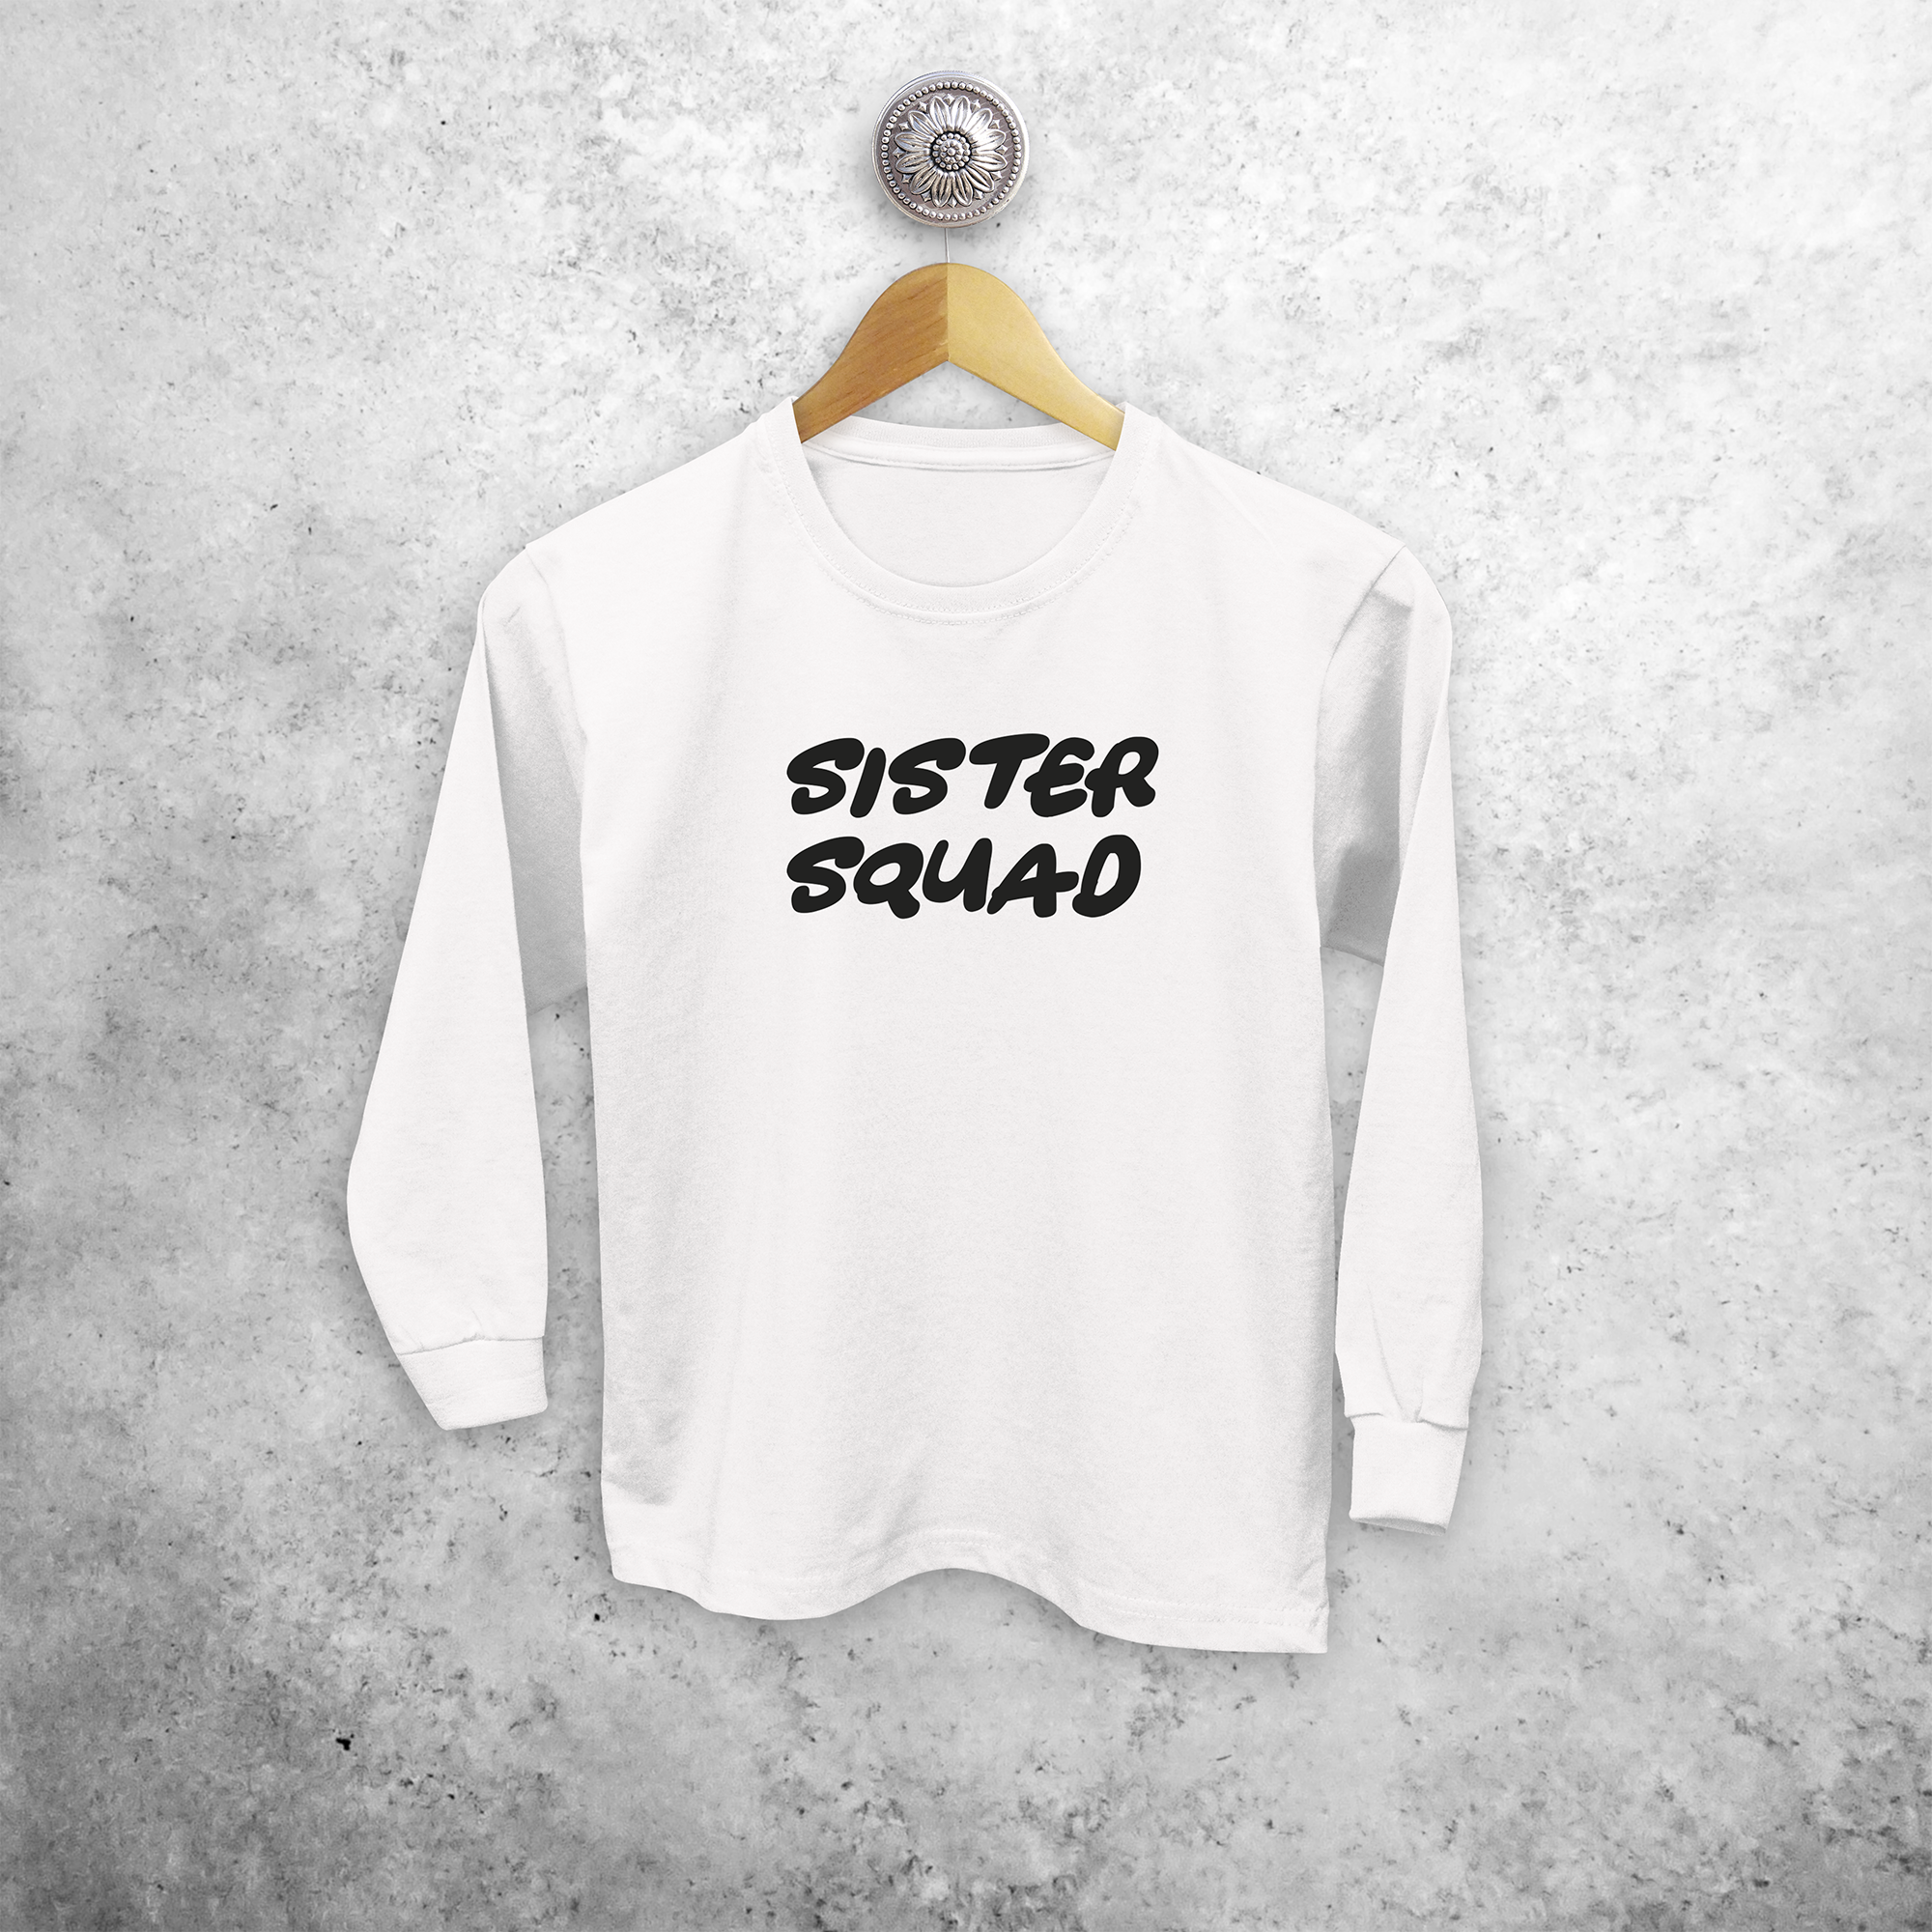 'Sister squad' kids longsleeve shirt